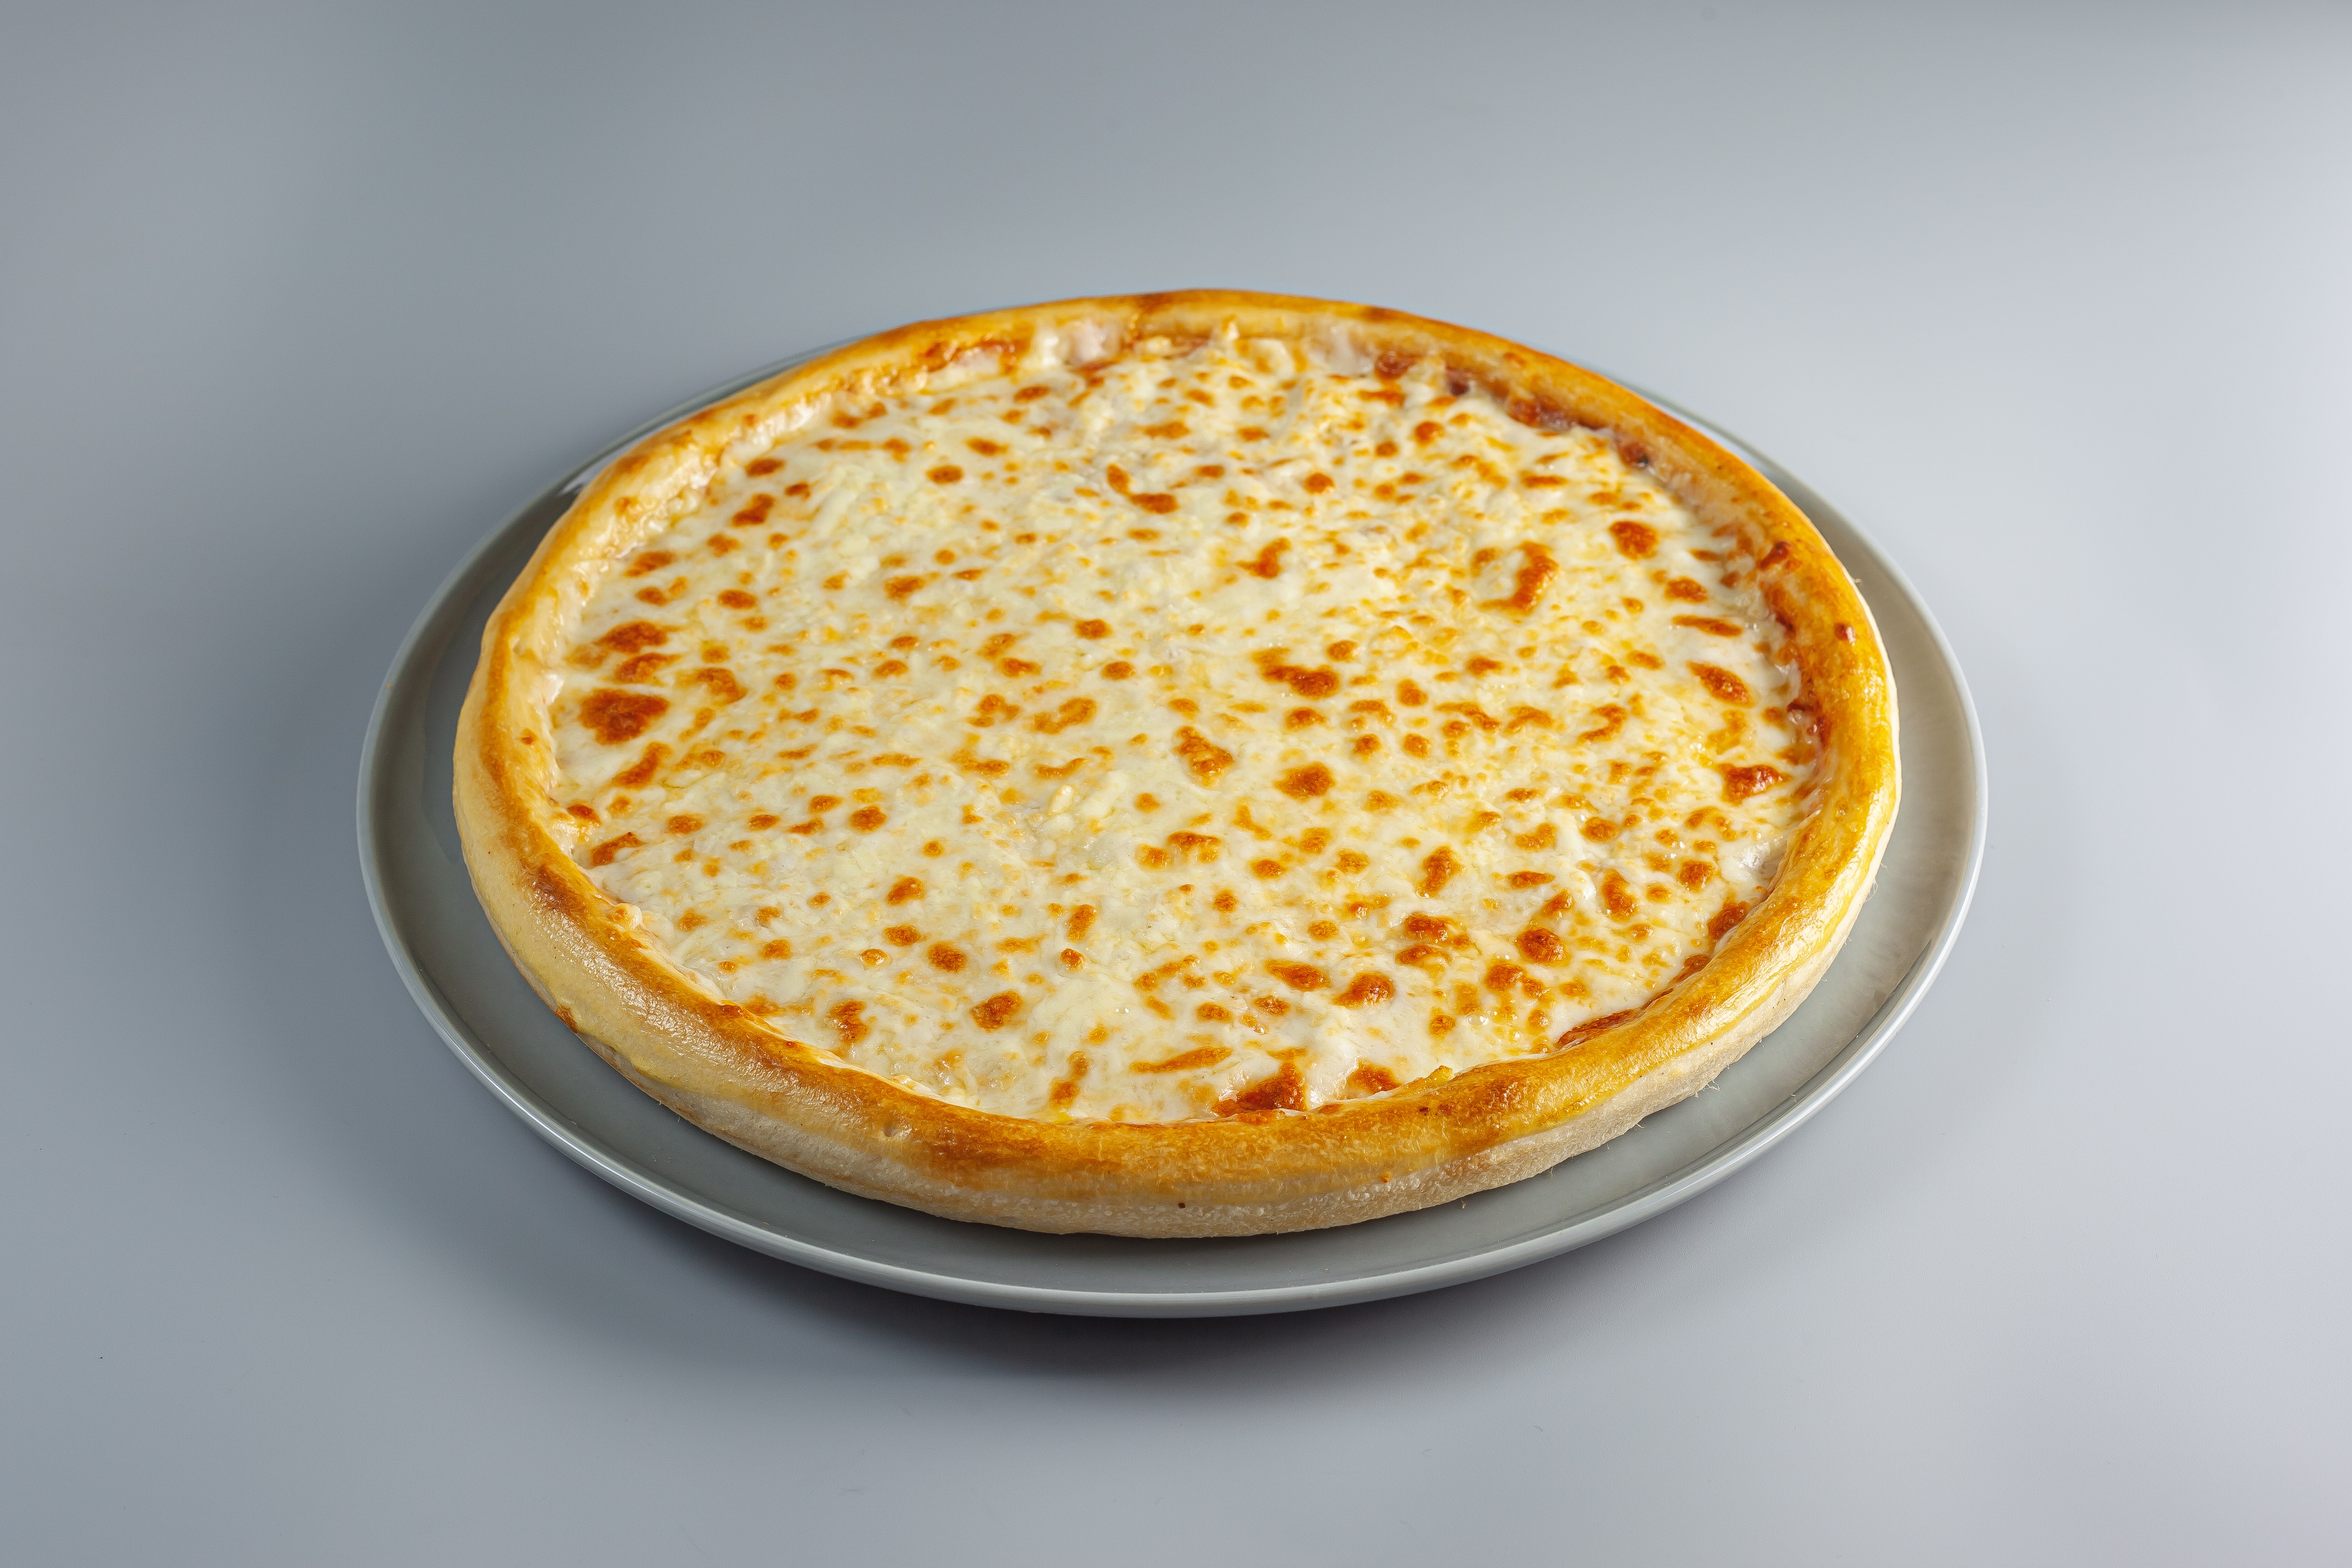 чесночный соус для пиццы как в пиццерии рецепт с фото пошагово фото 112